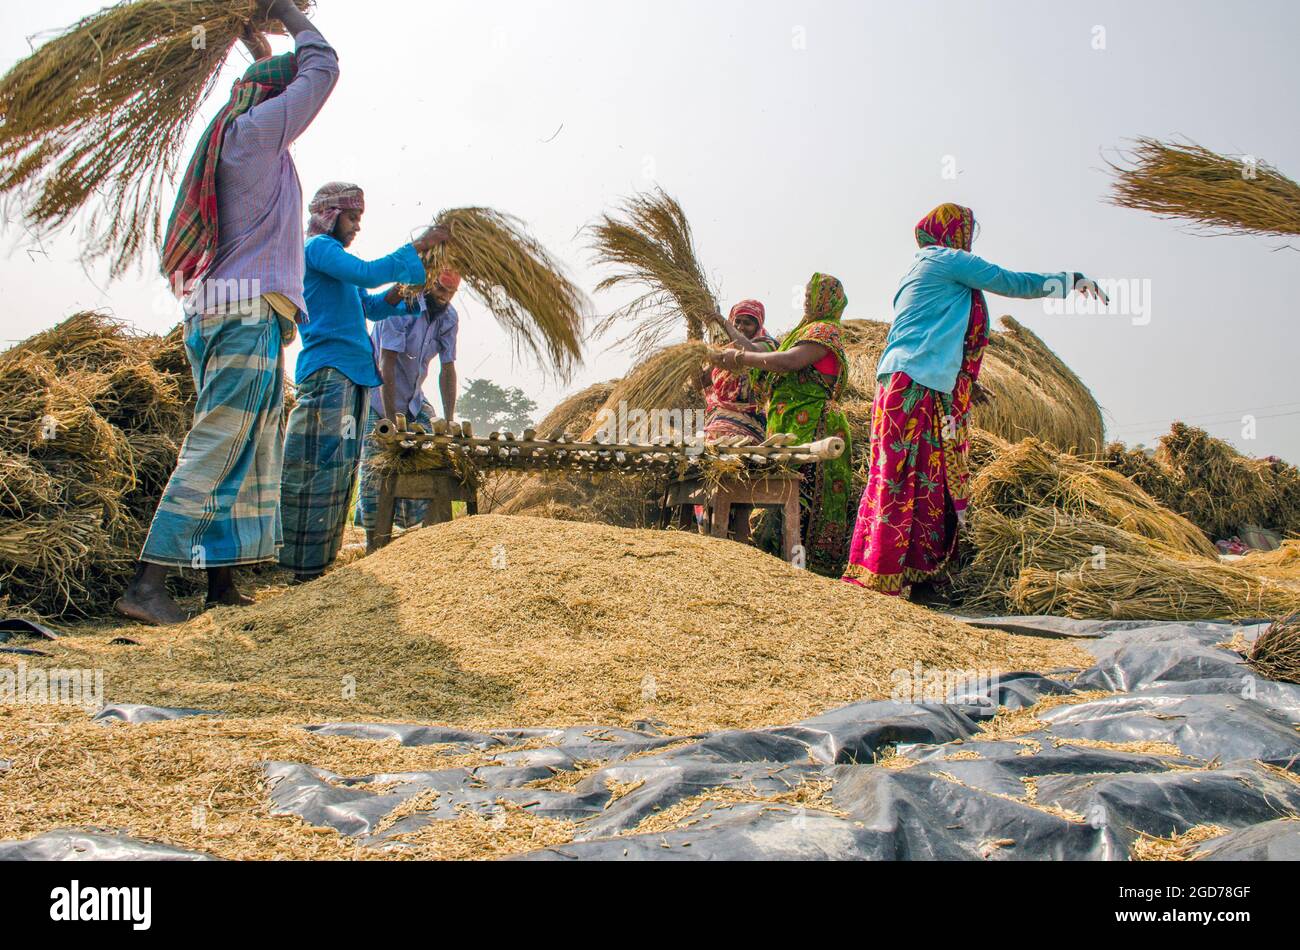 lavorazione di risaie nelle zone rurali del bengala occidentale dell'india Foto Stock